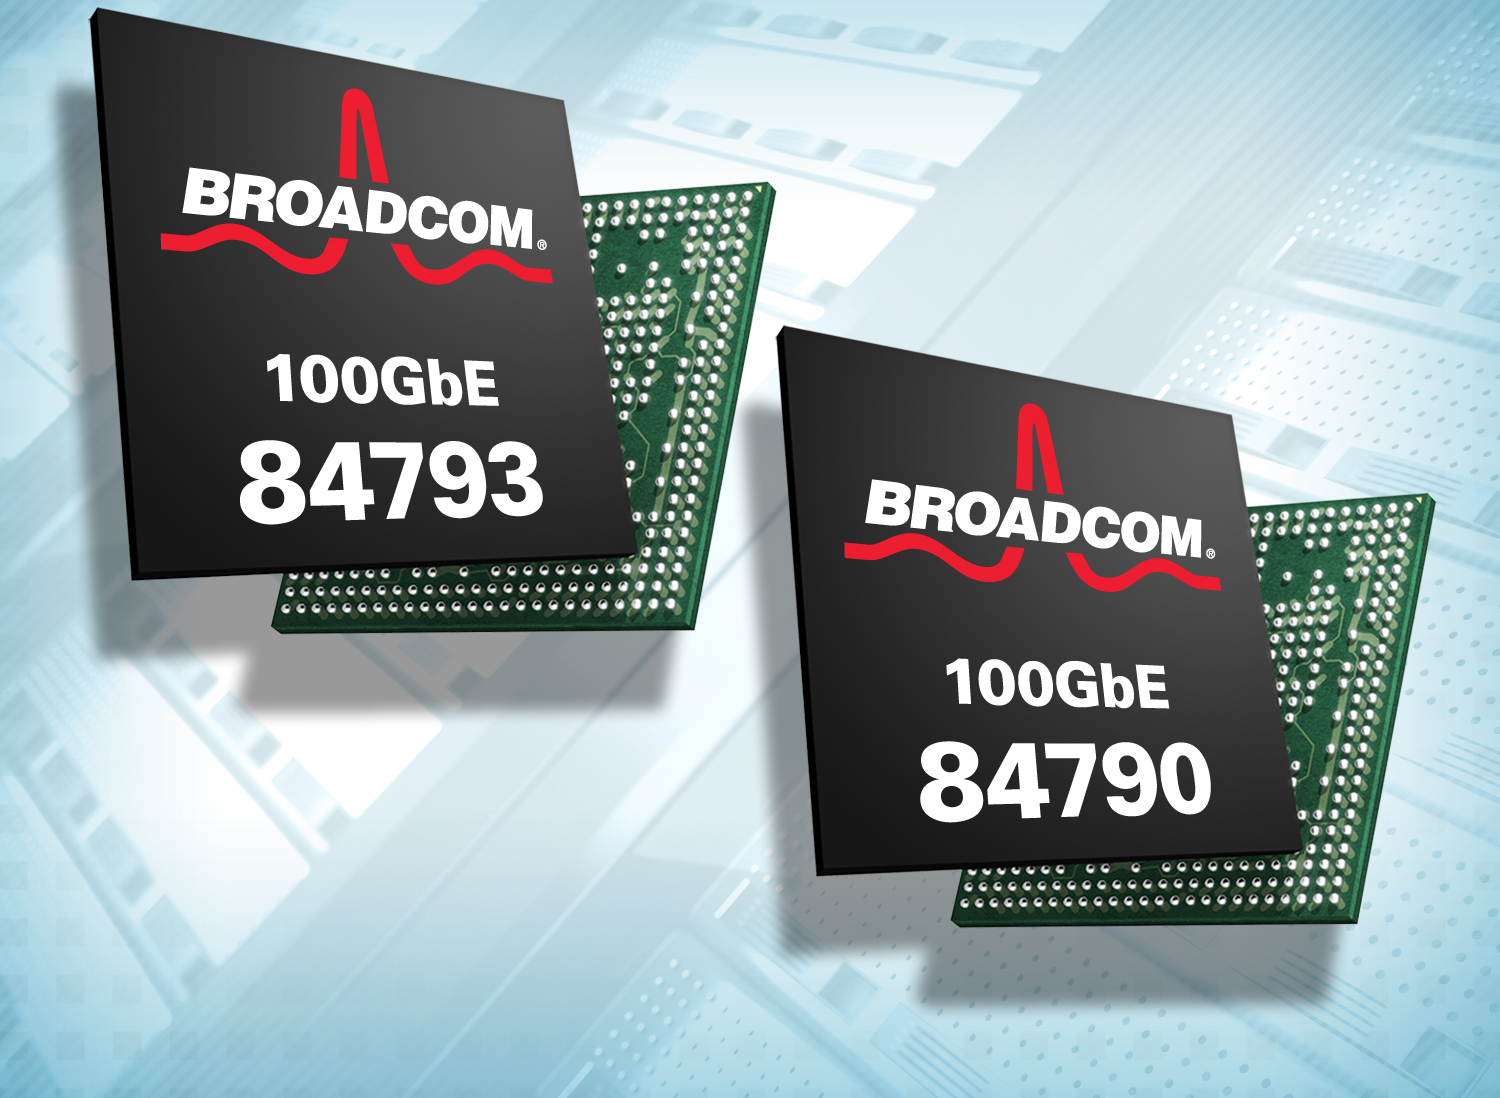 Broadcom liefert verhaltenen Ausblick